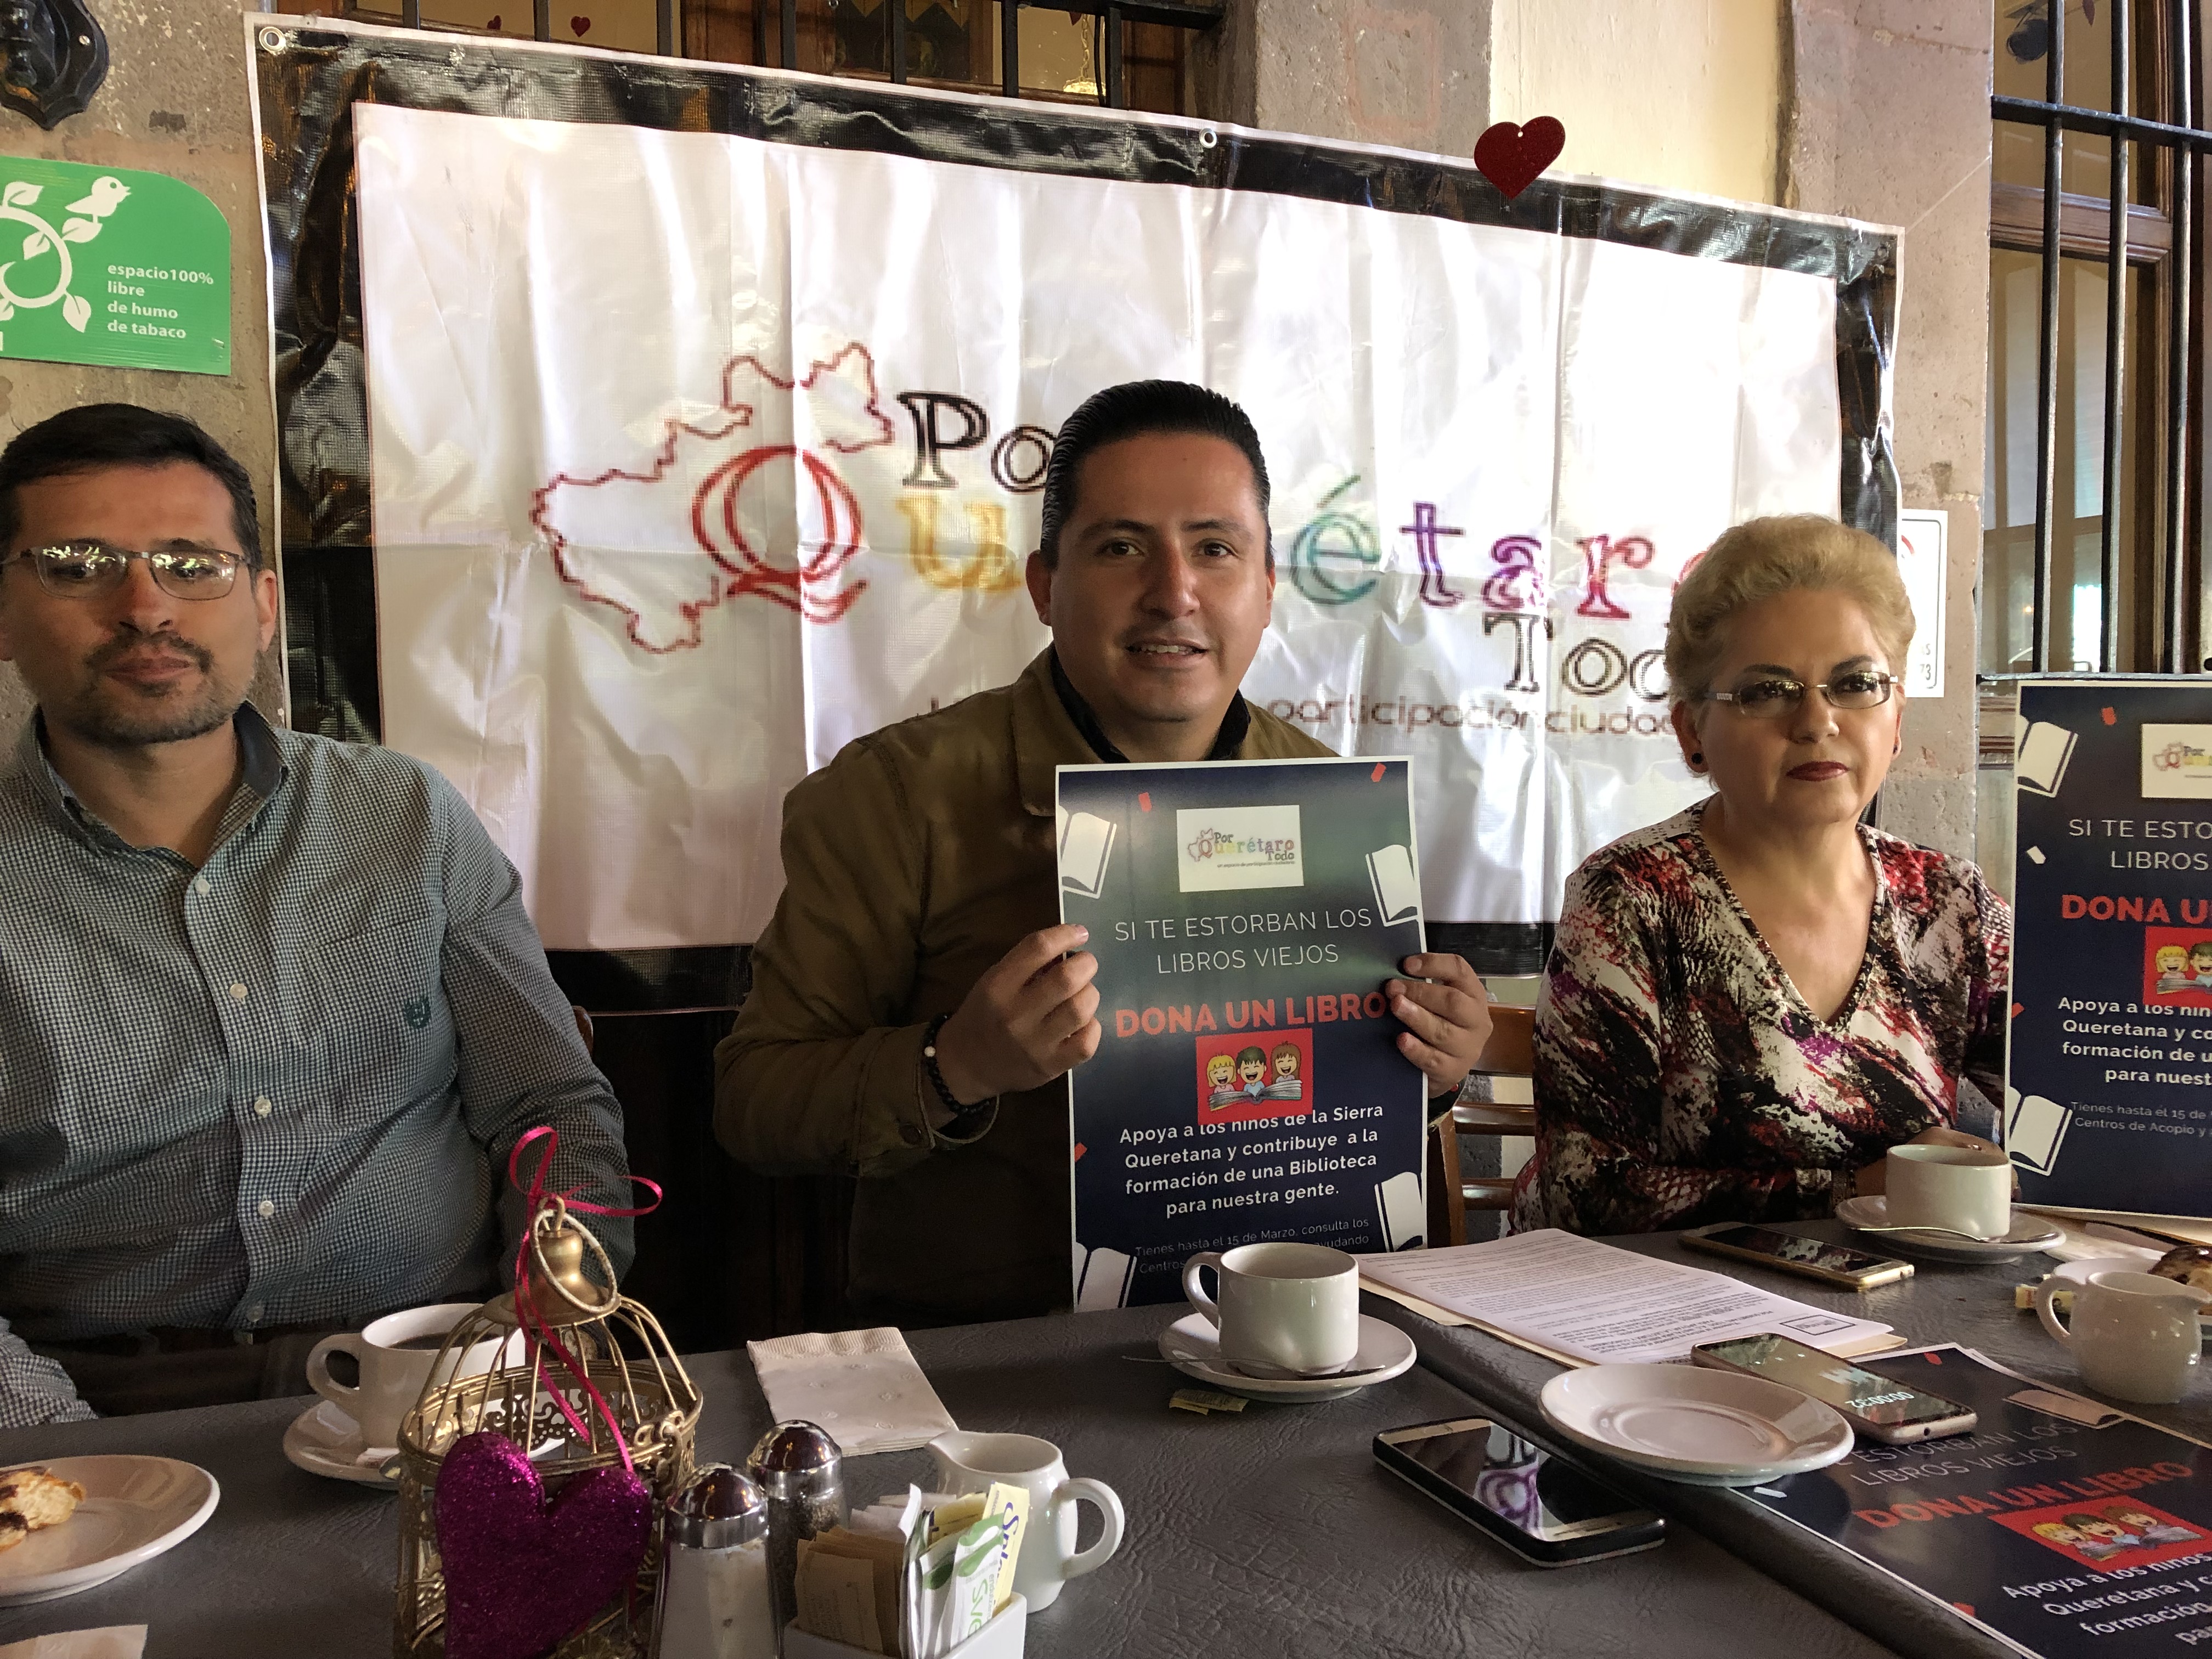  Lanzan campaña para construir biblioteca pública en Cadereyta de Montes